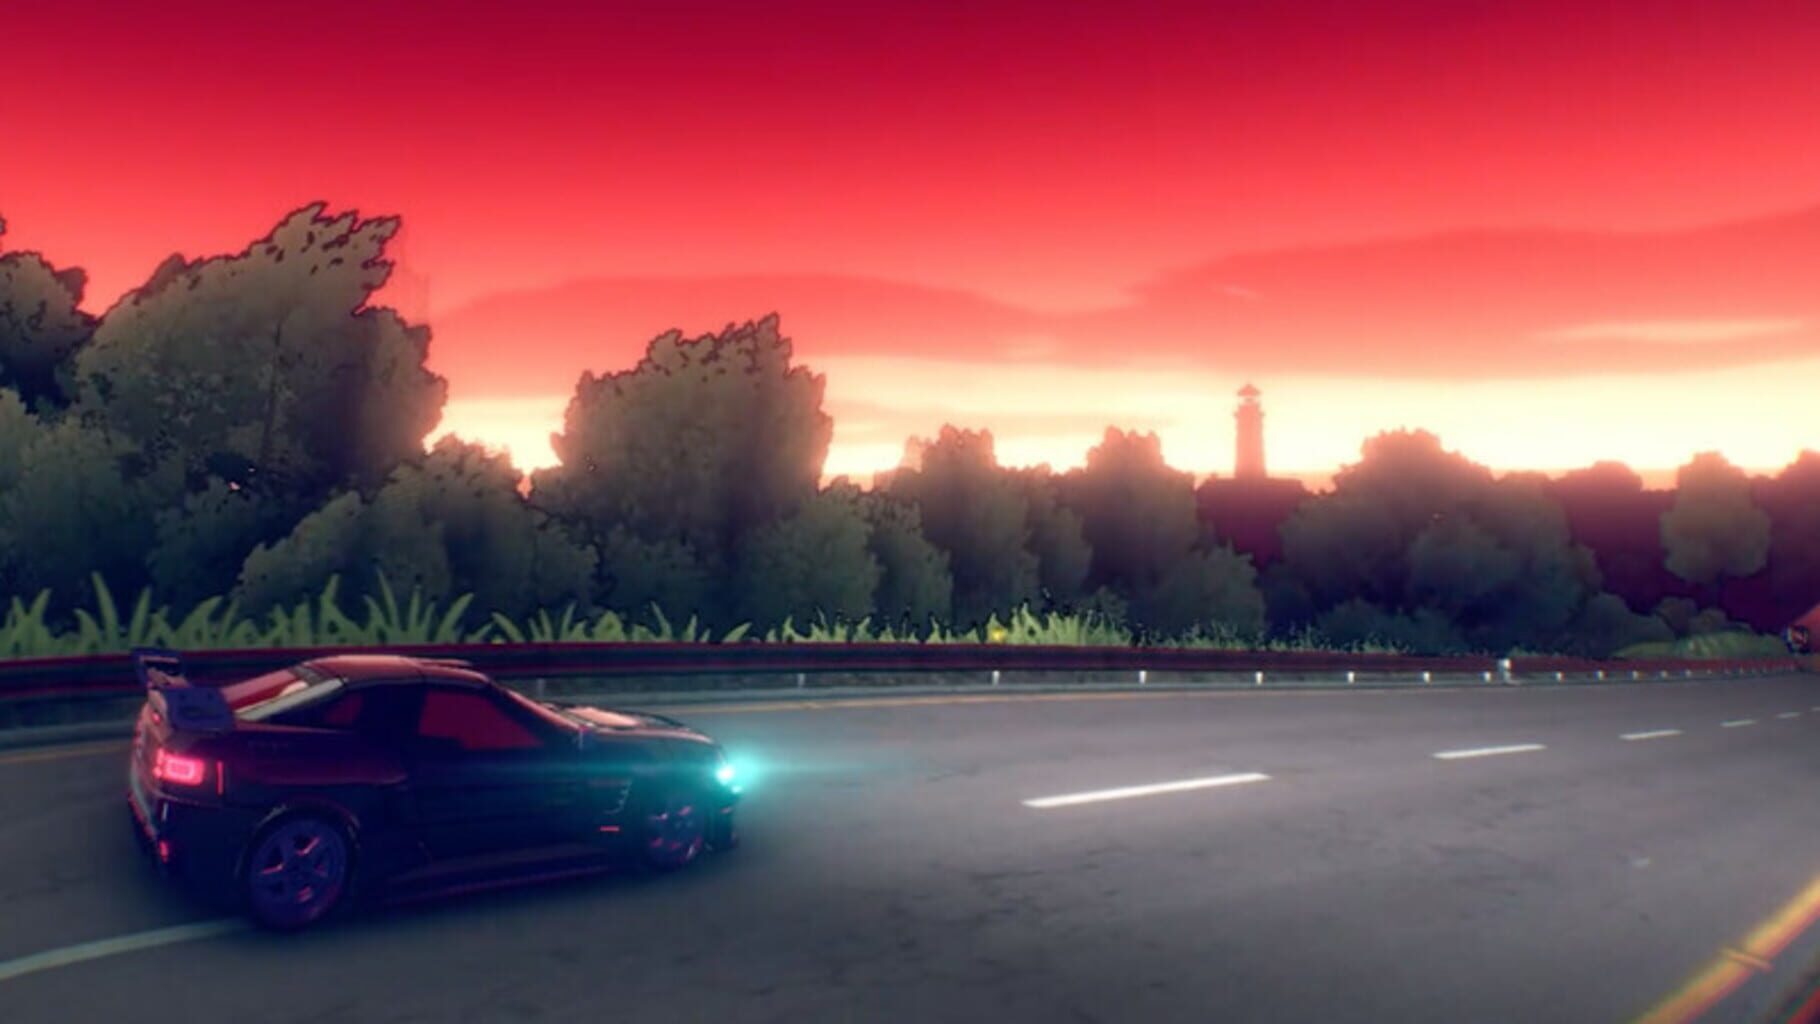 Inertial Drift: Twilight Rivals screenshot